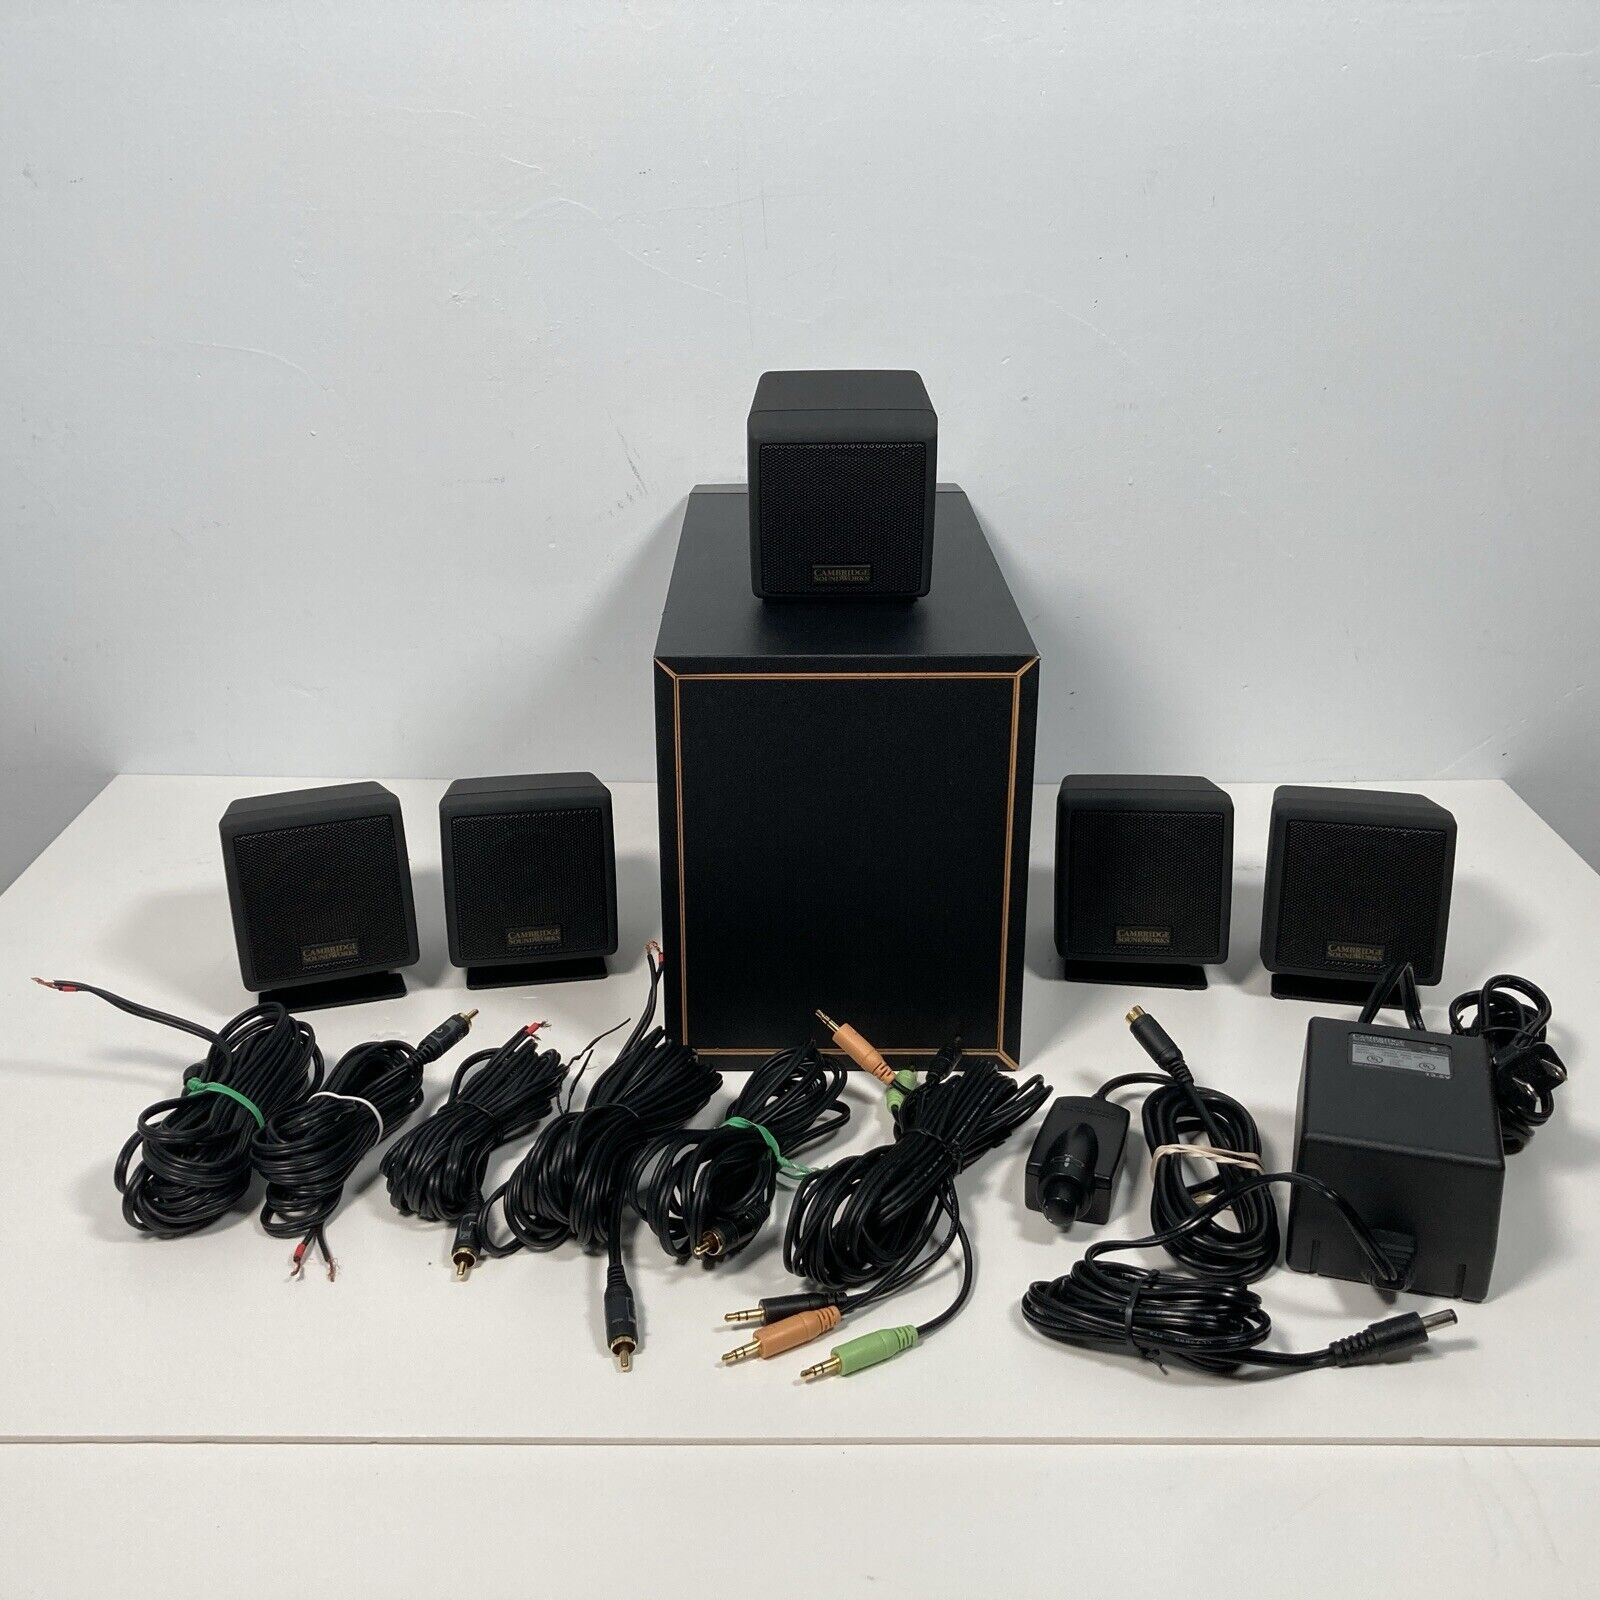 Cambridge SoundWorks DTT2200 5.1 Desktop Theatre PC Speaker Set Tested Works